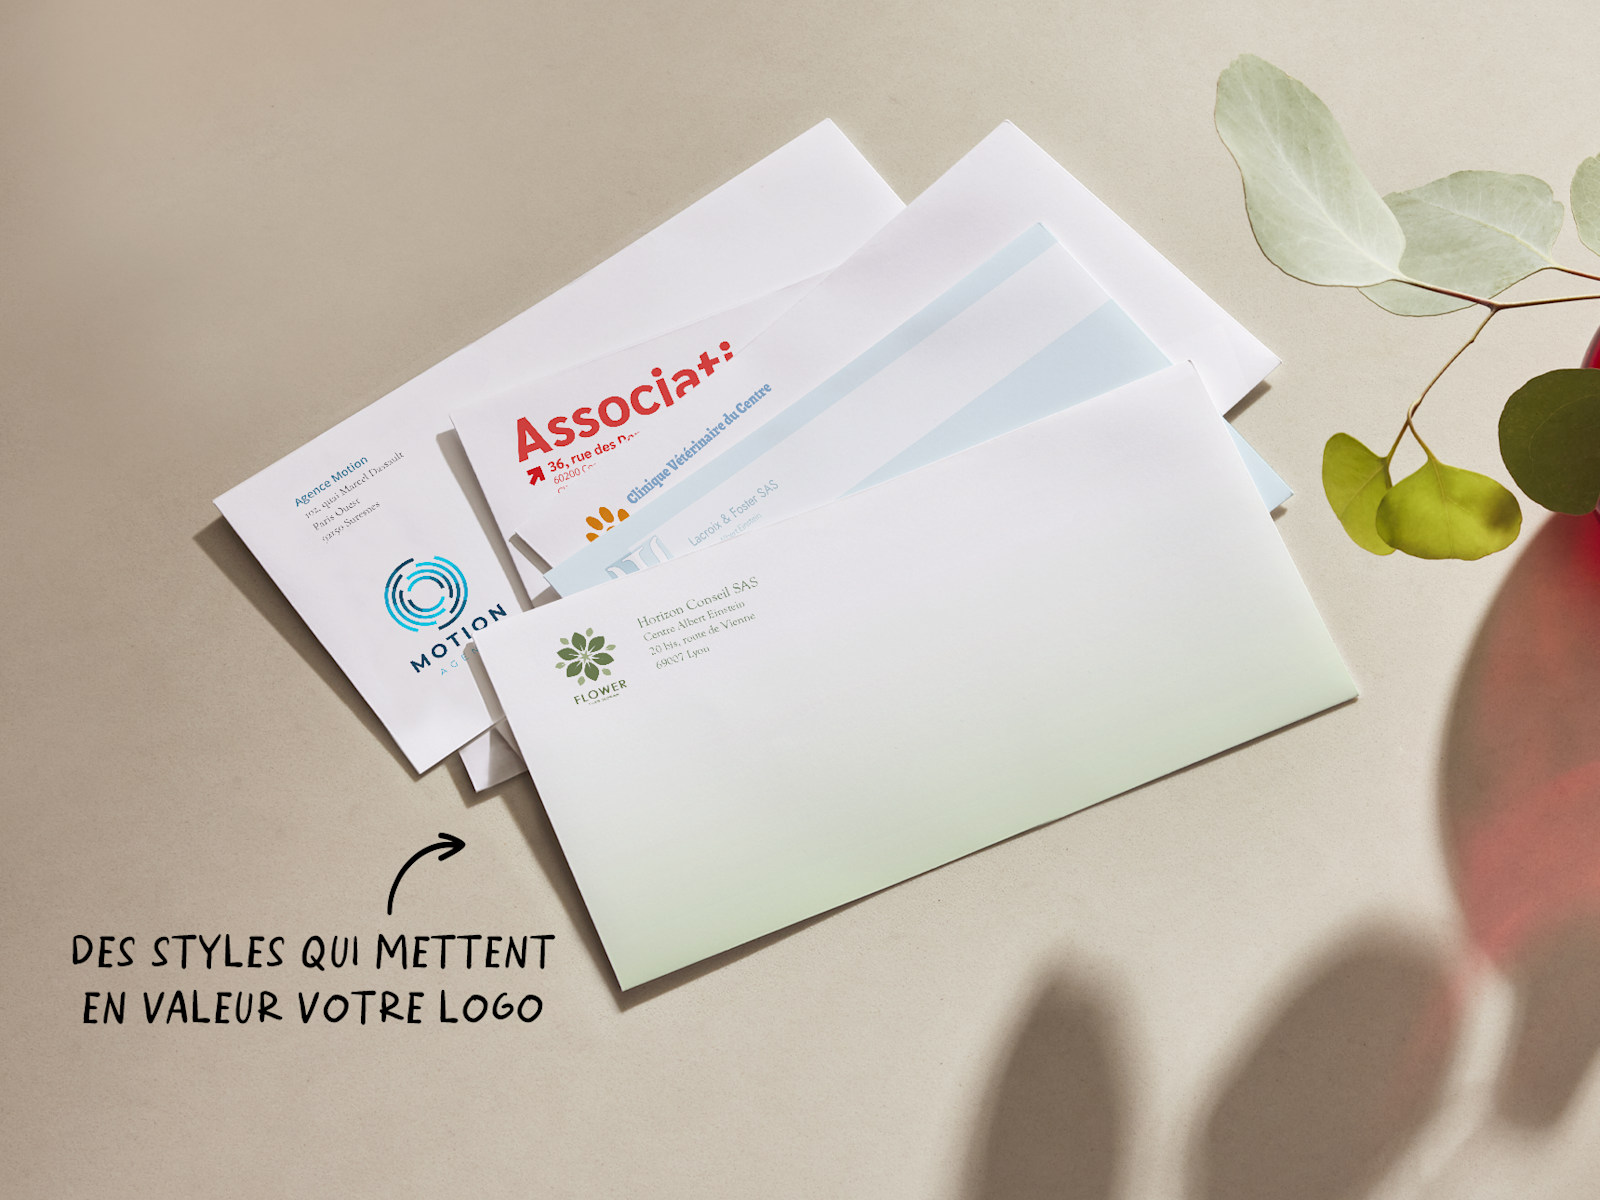 Enveloppes DL personnalisées présentant différents graphismes professionnels. Il est indiqué que les différents styles d’enveloppes mettent en valeur votre logo.